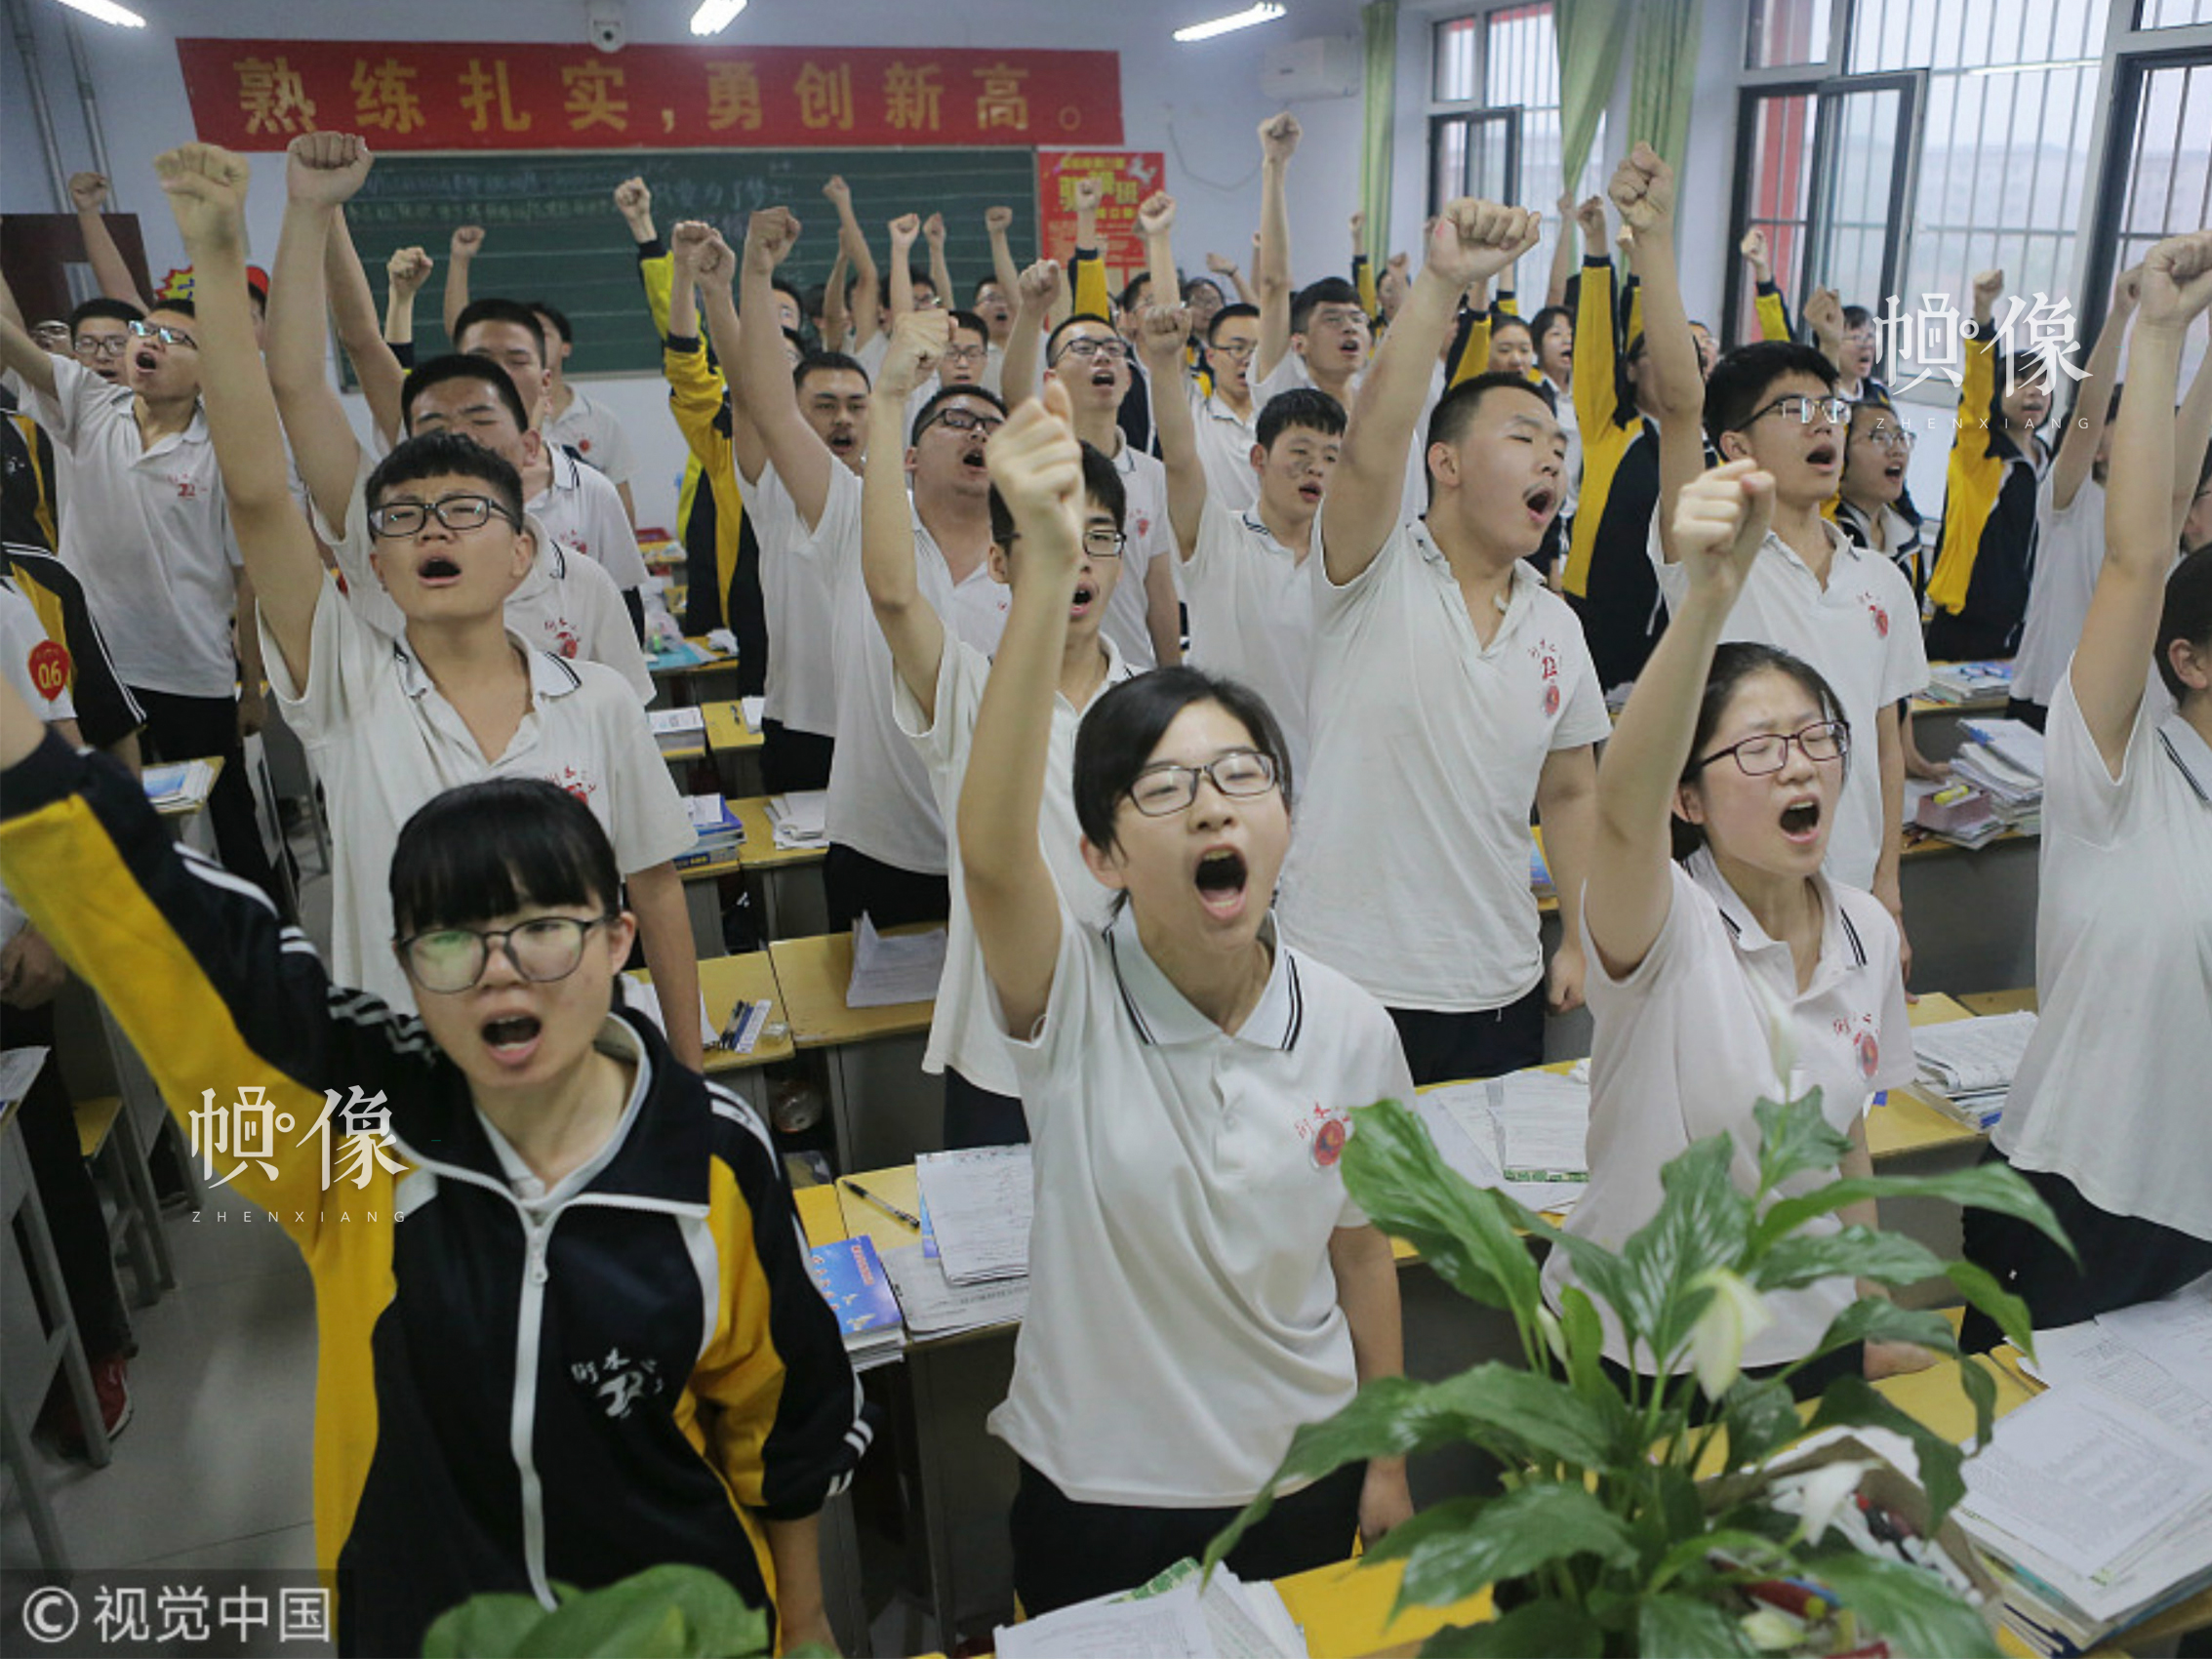 2018年05月06日，河北衡水二中的高三学生在进行课前宣誓，这是这所学校所有年级每个班每天都会进行的功课，这种方式既可以宣泄压力，又可以振奋精神。图片来源：视觉中国